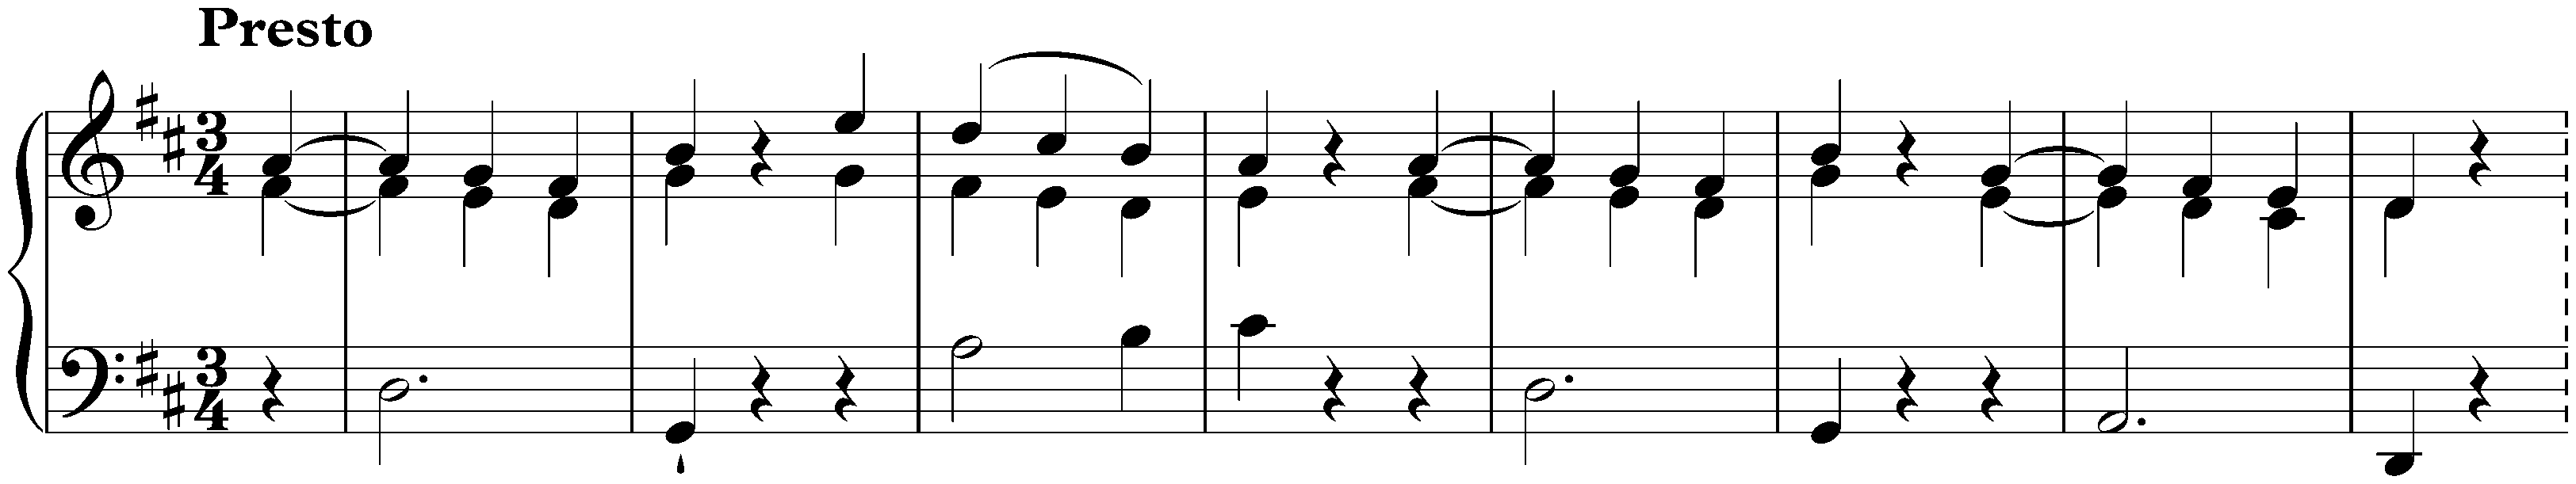 Sonata in D major, Hob. XVI:24; 3. Finale: Presto